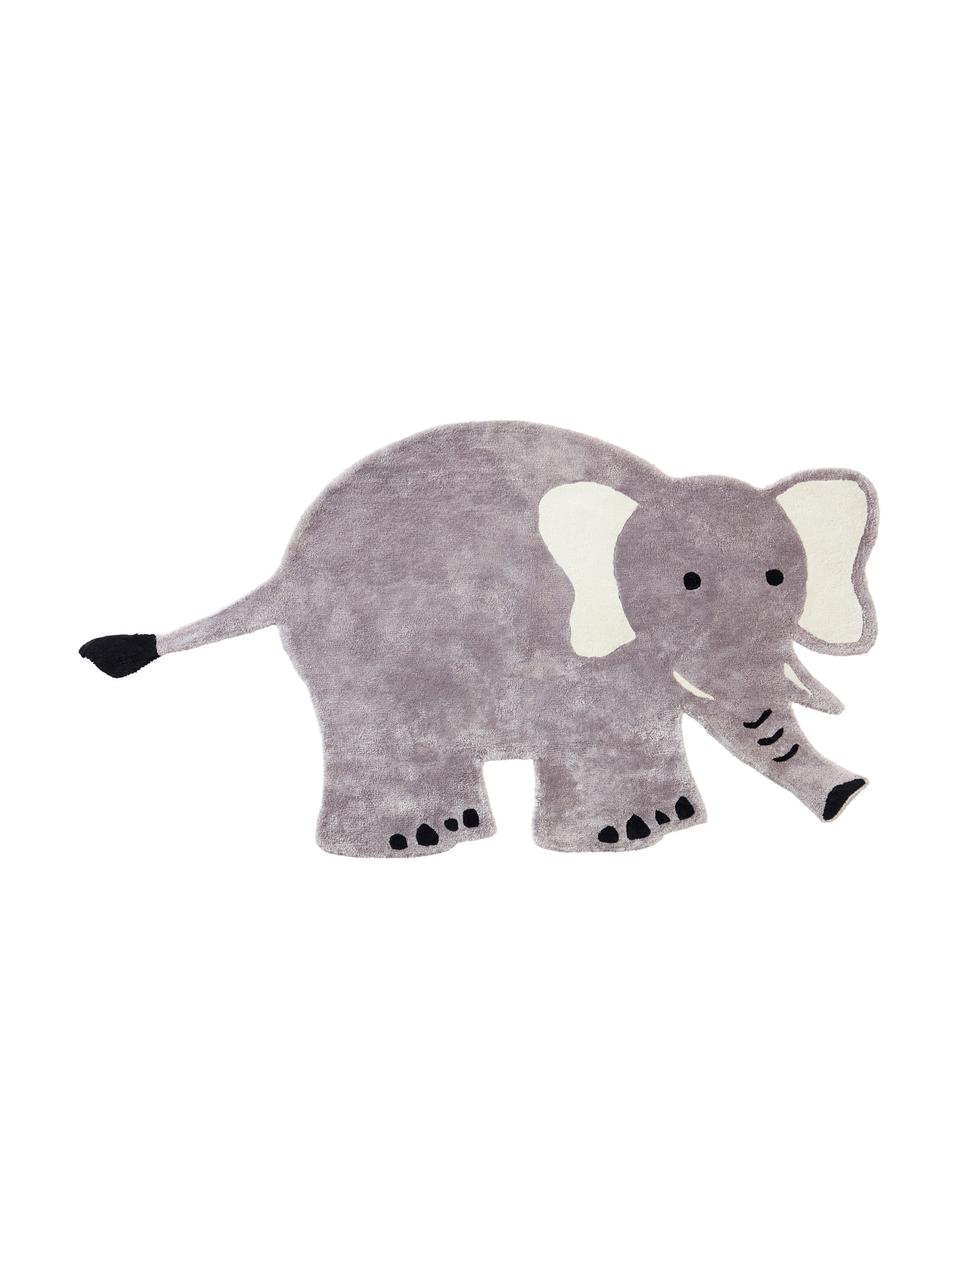 Dywan dziecięcy z wiskozy Ellie Elephant, 100% wiskoza, 4600 g/m², Szary, czarny, biały, S 100 x D 180 cm (Rozmiar S)